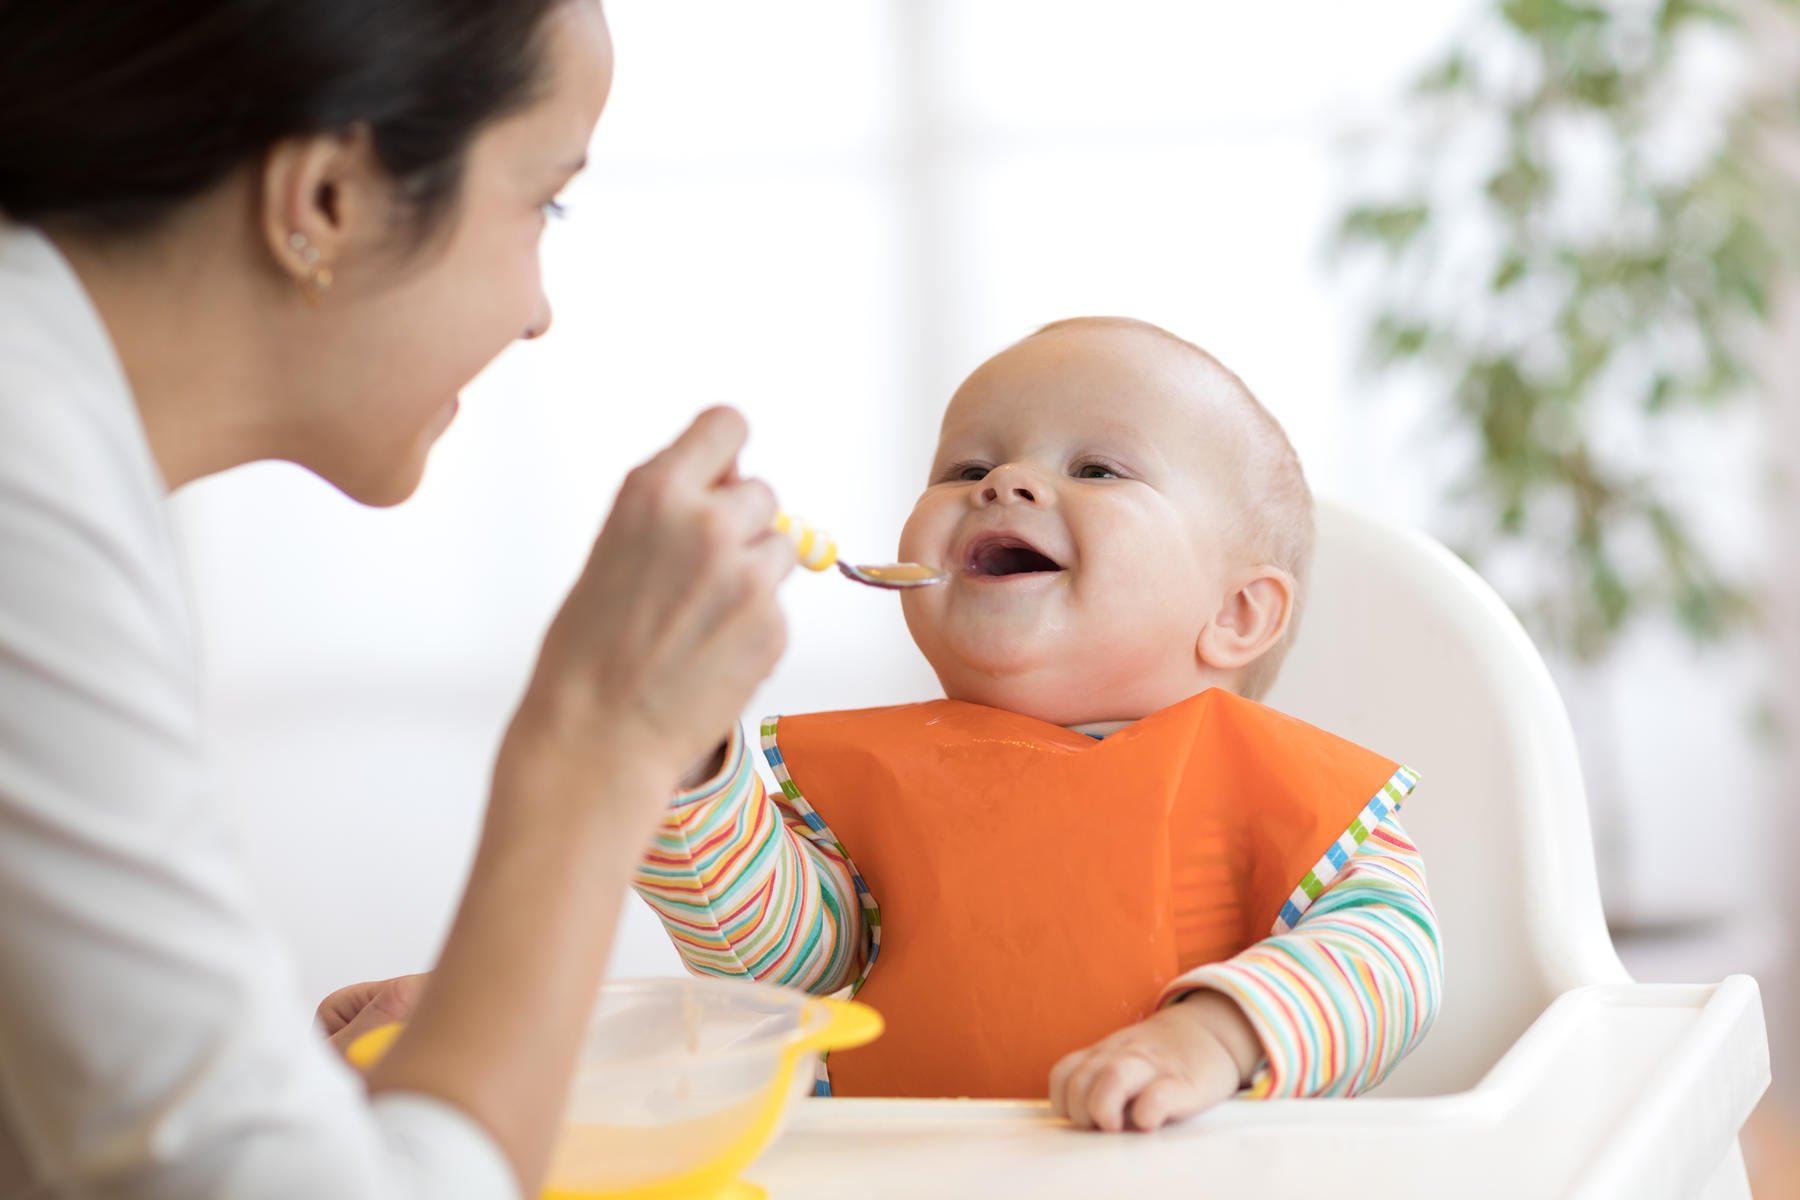 7 أخطاء تفاديها عند إطعام طفلك لأول مرة